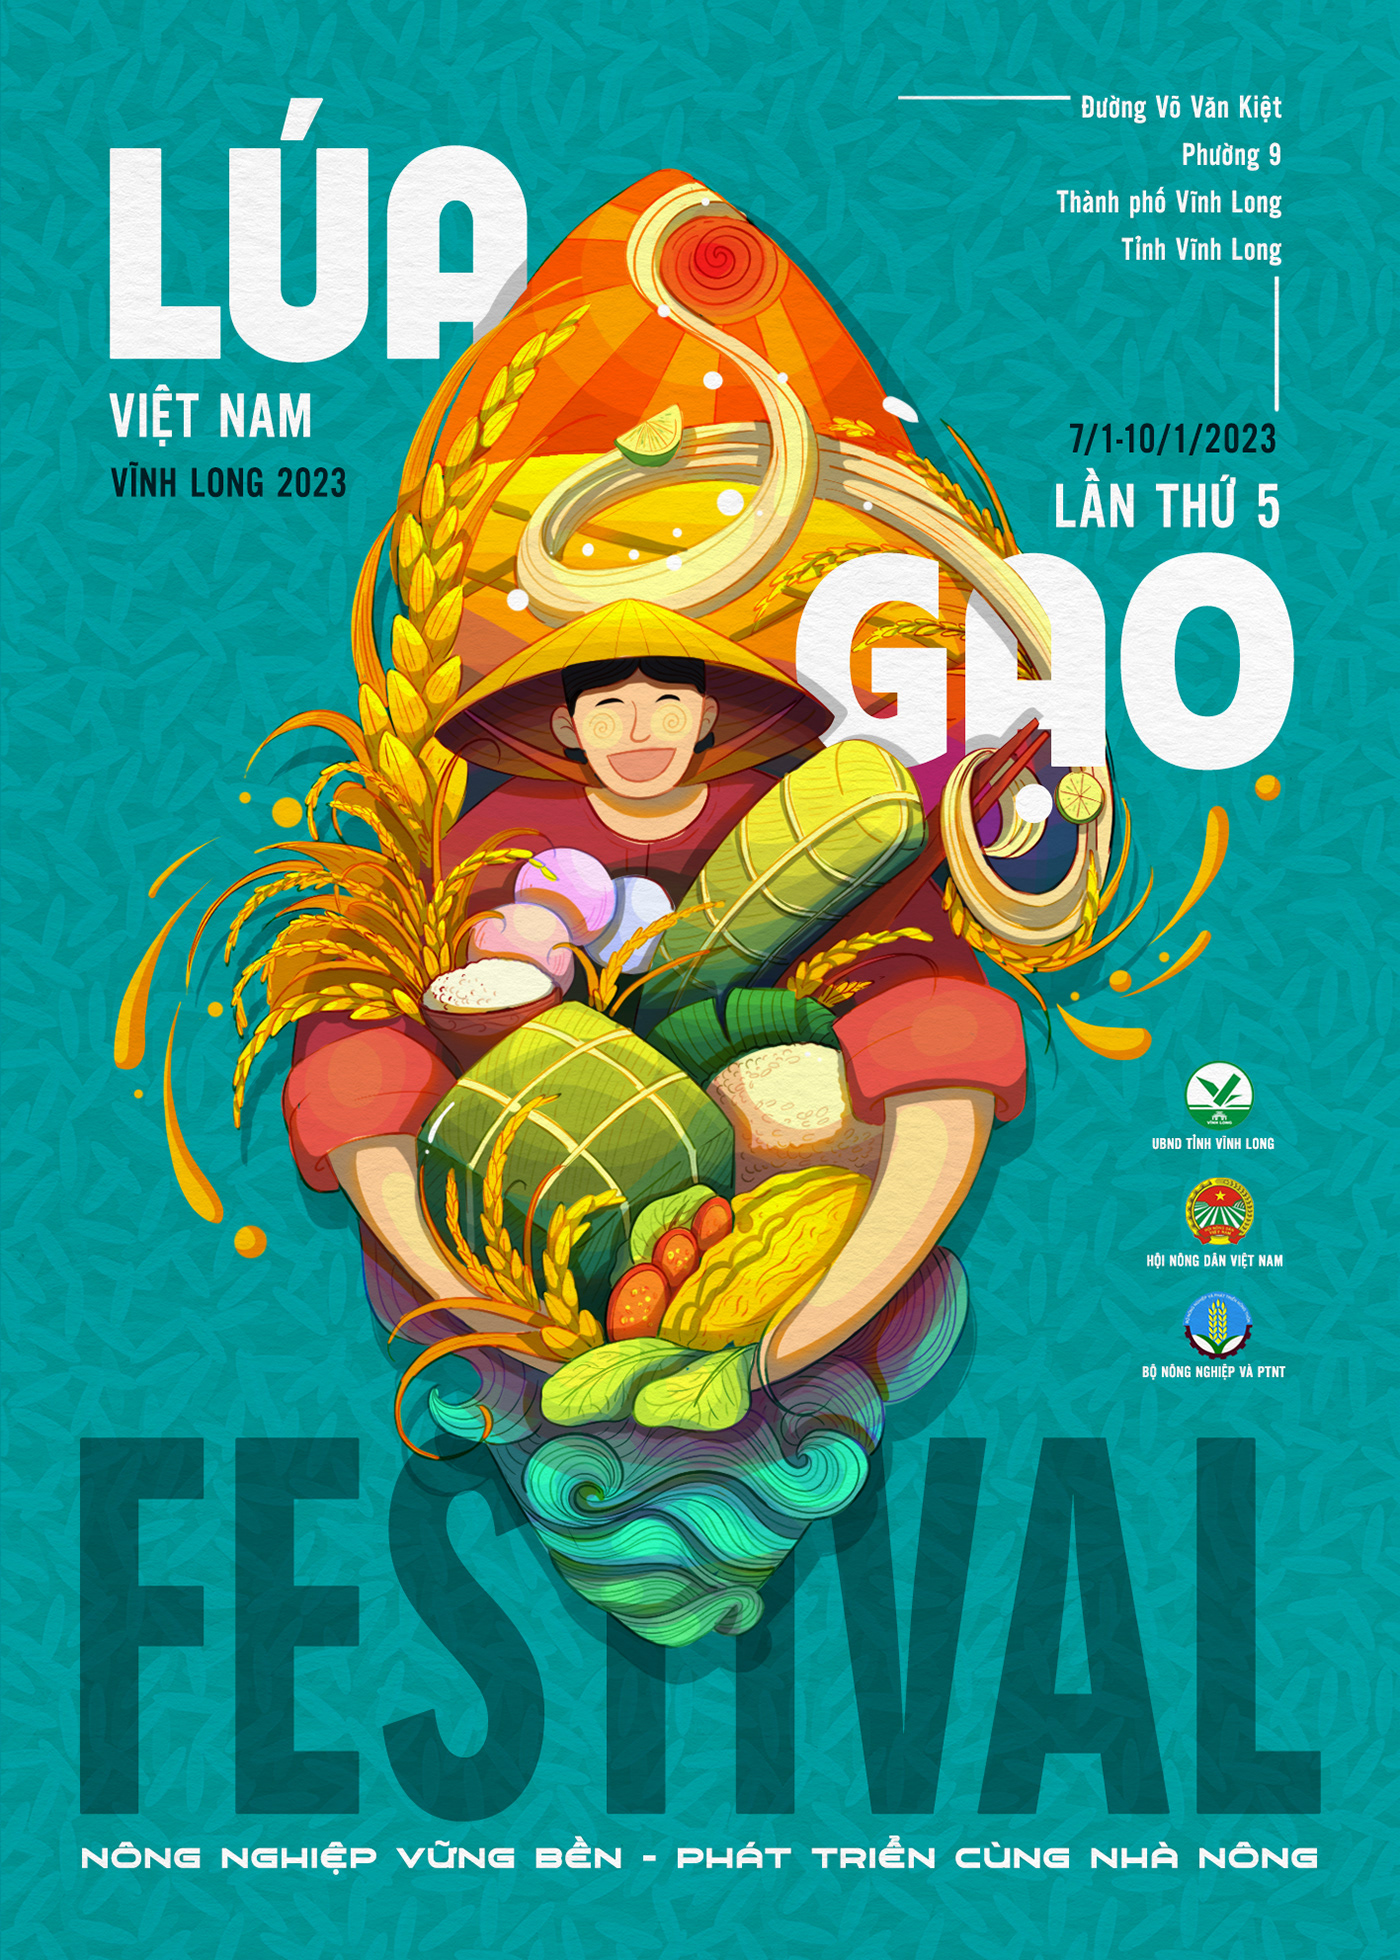 design festival festival poster ILLUSTRATION  poster